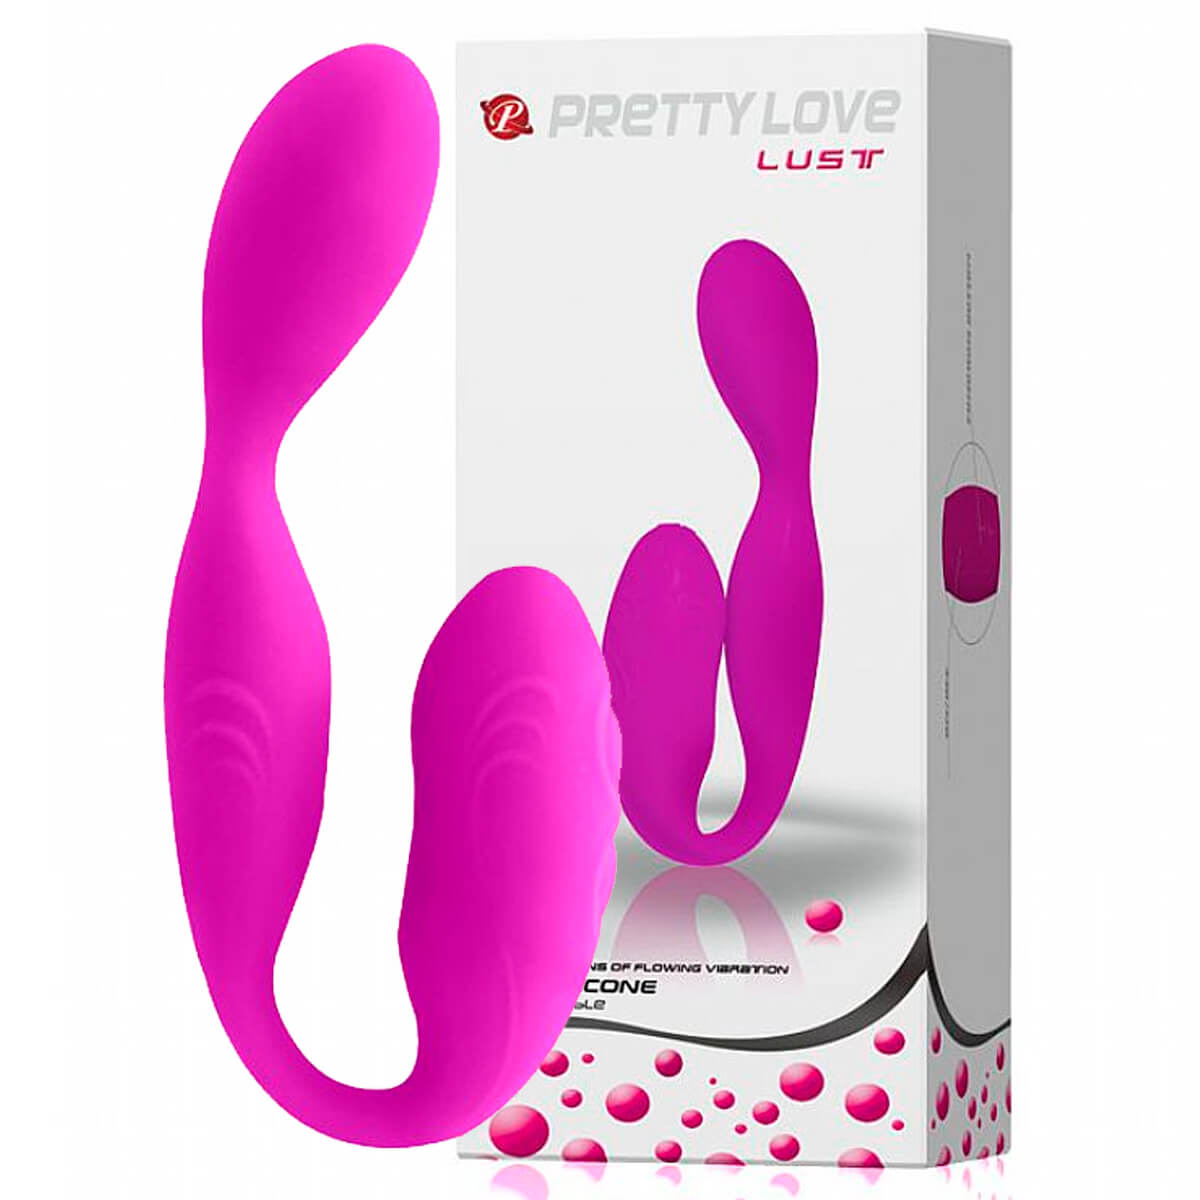 Pretty Love Lust Vibrador para Casal com 30 Vibrações Ultra Potentes Miss Collection